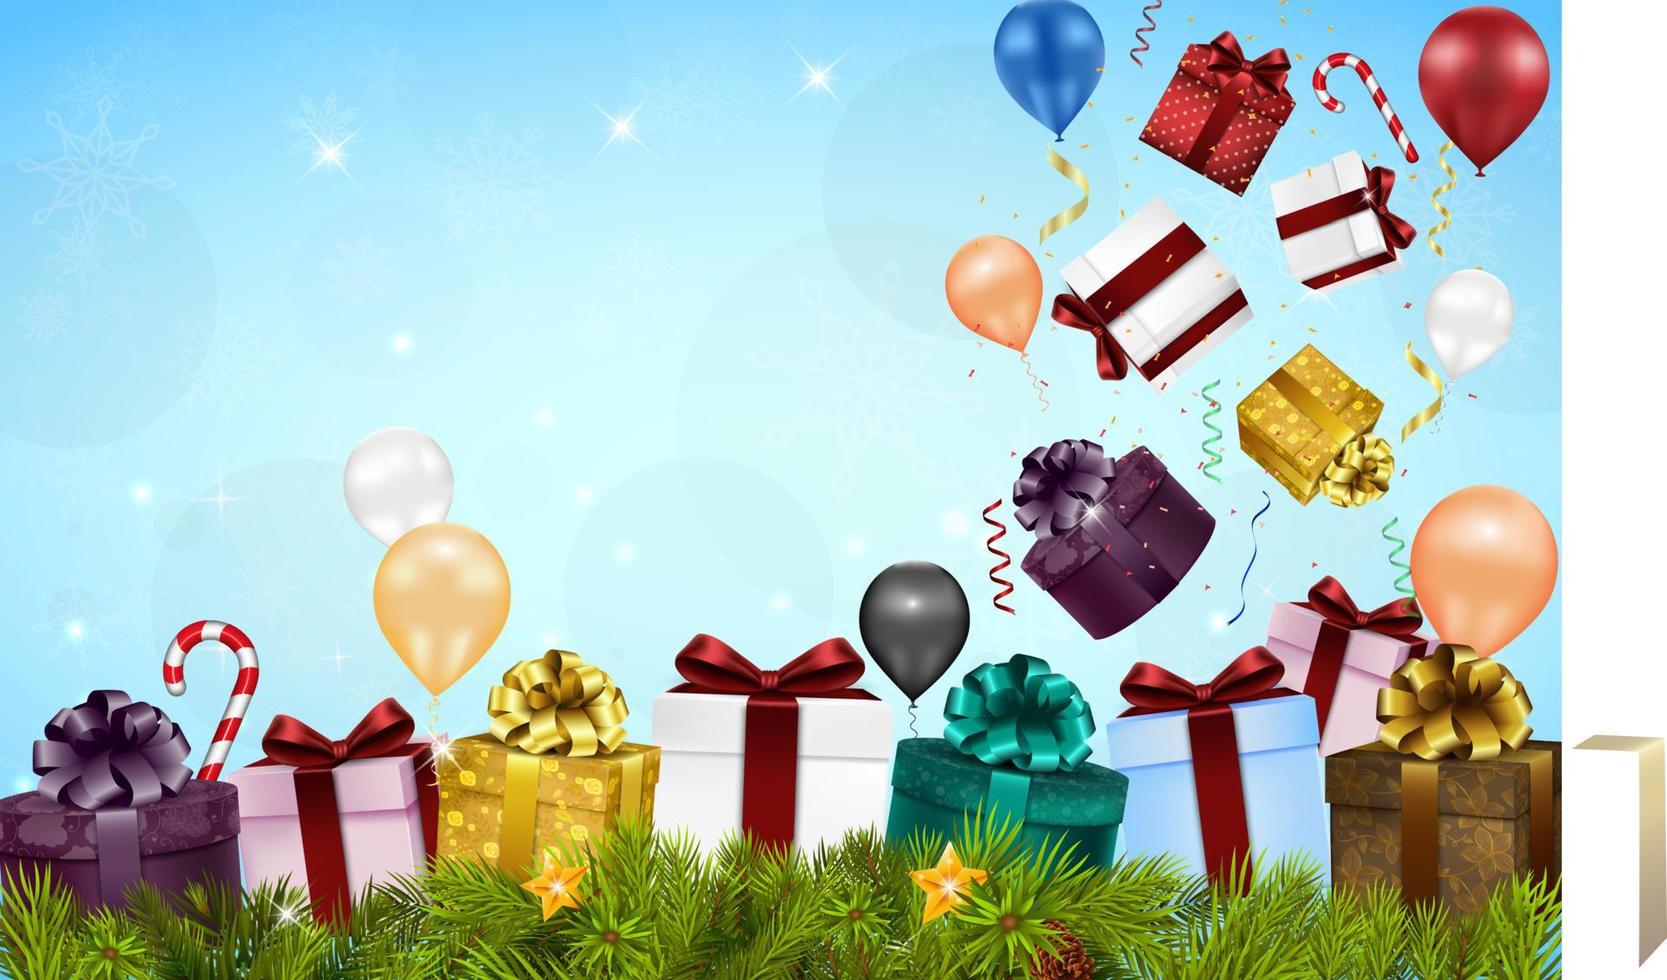 vrolijke kerstachtergrond met geschenkdozen, ballonnen, snoepjes en dennenboom vector